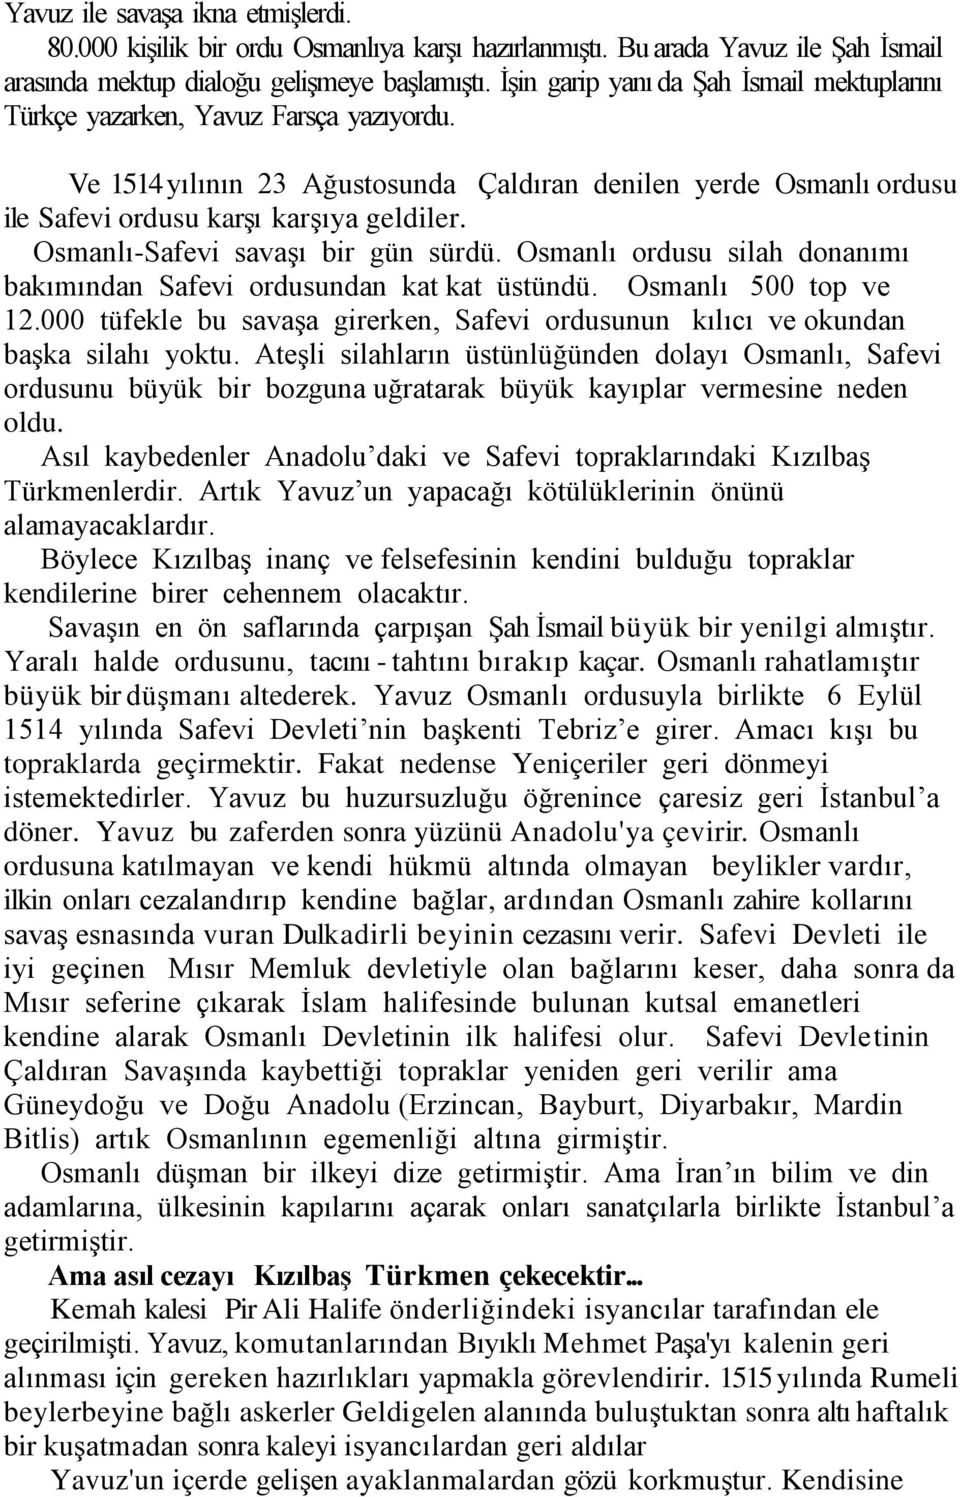 Osmanlı-Safevi savaşı bir gün sürdü. Osmanlı ordusu silah donanımı bakımından Safevi ordusundan kat kat üstündü. Osmanlı 500 top ve 12.